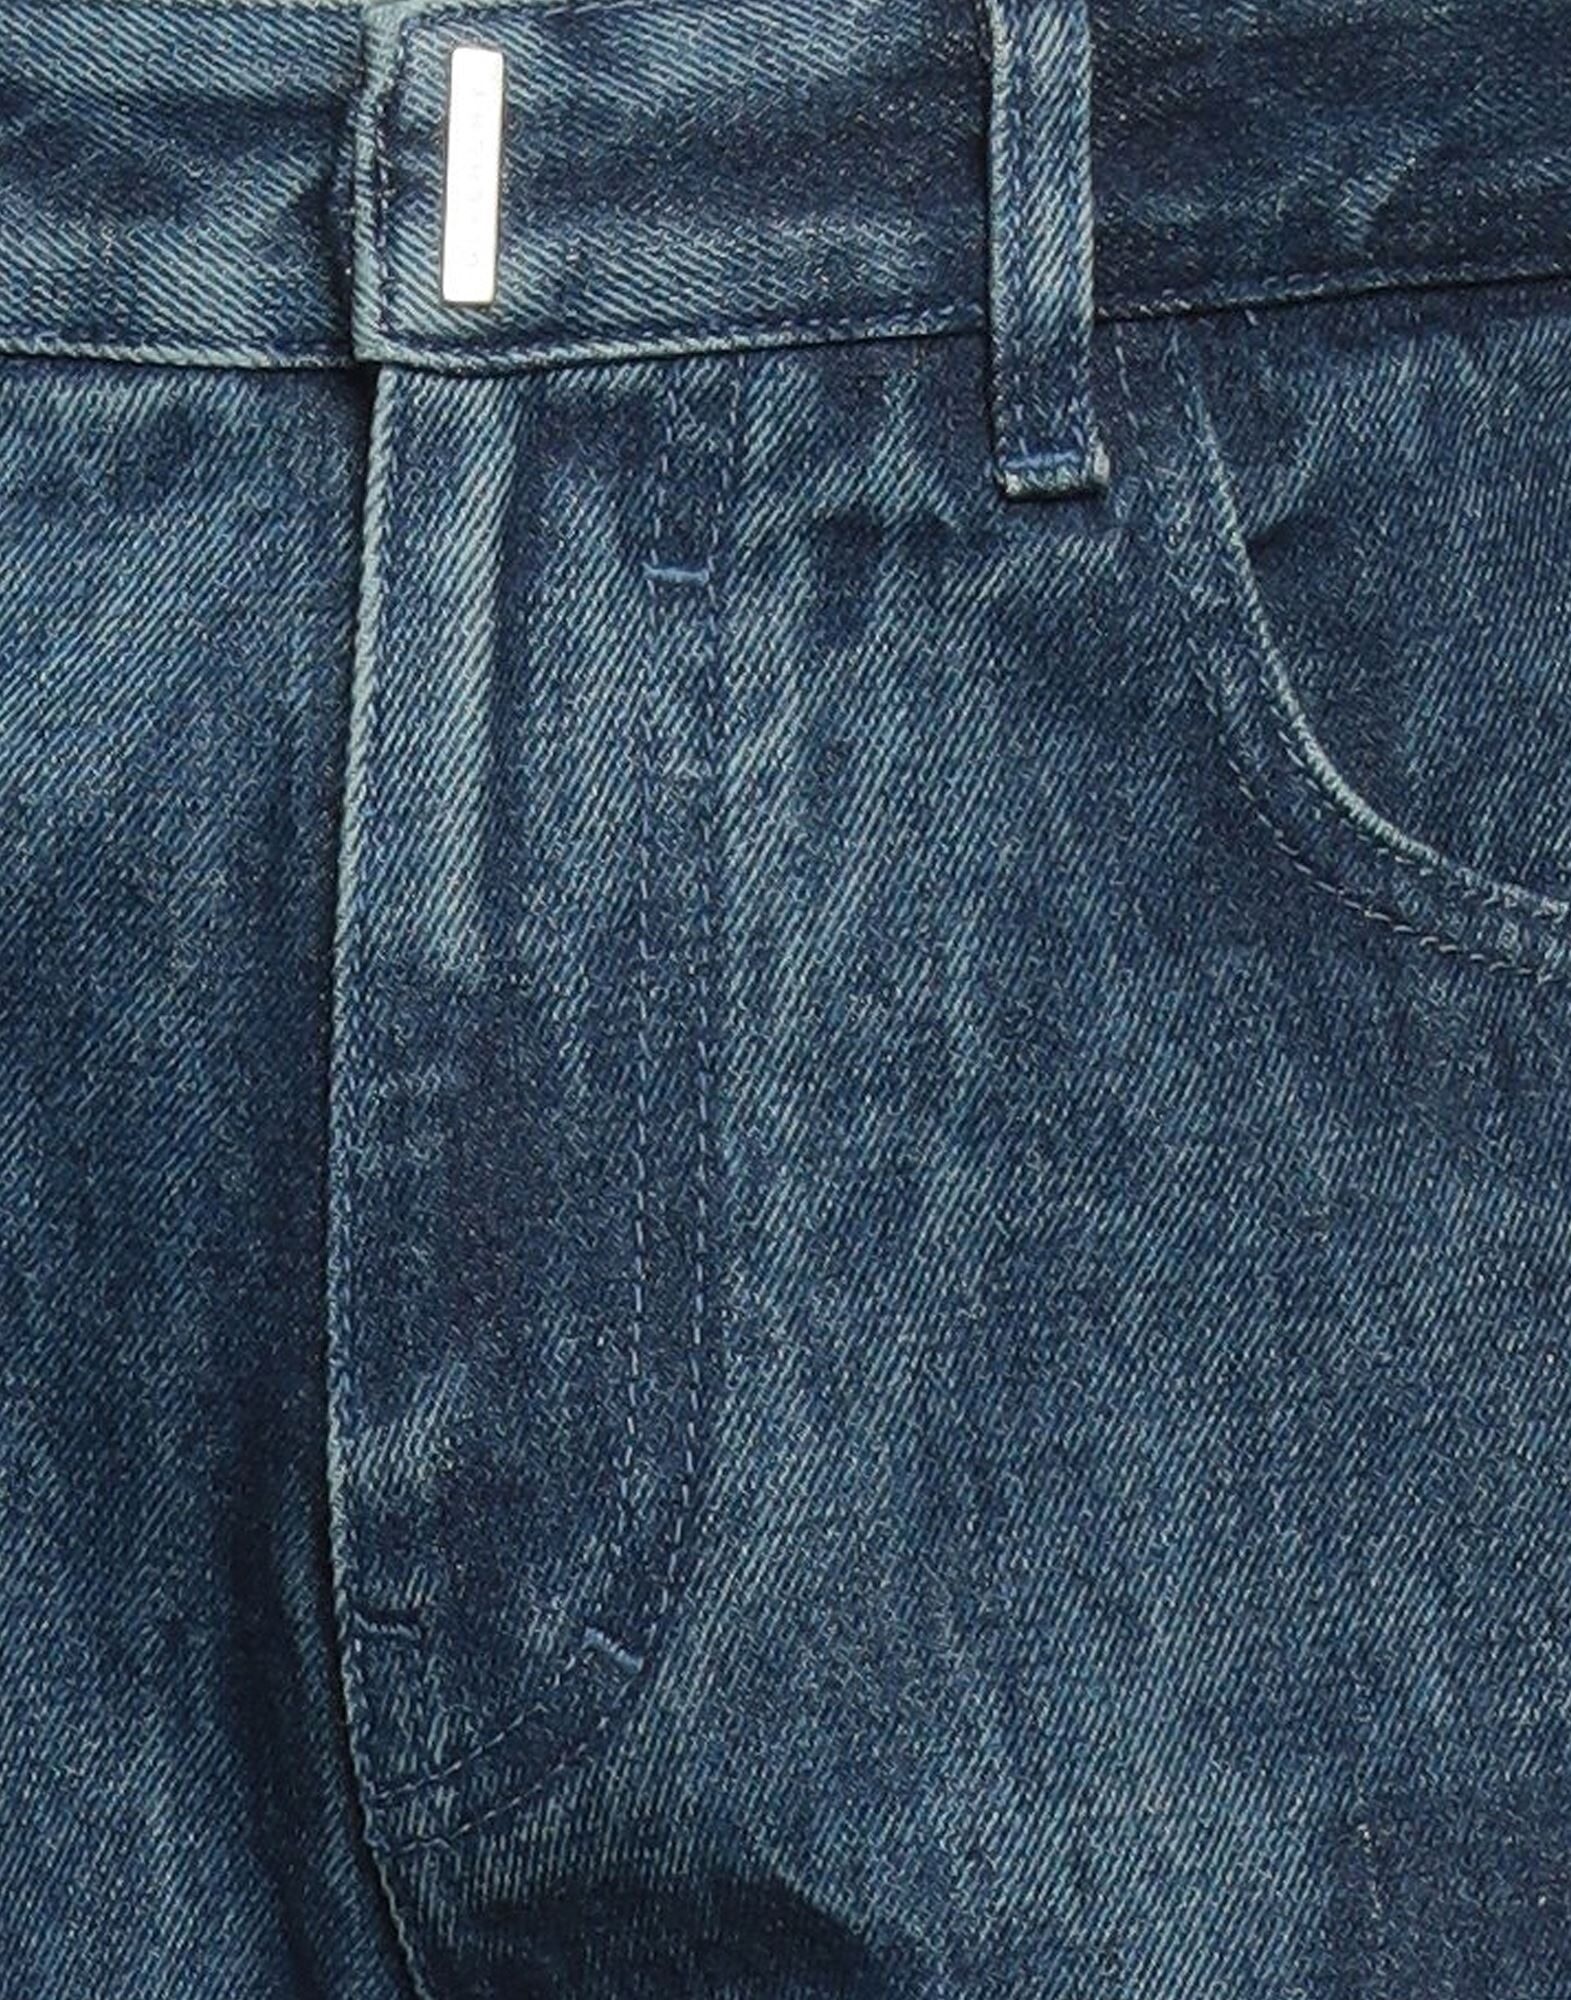 Blue Men's Denim Pants - 4